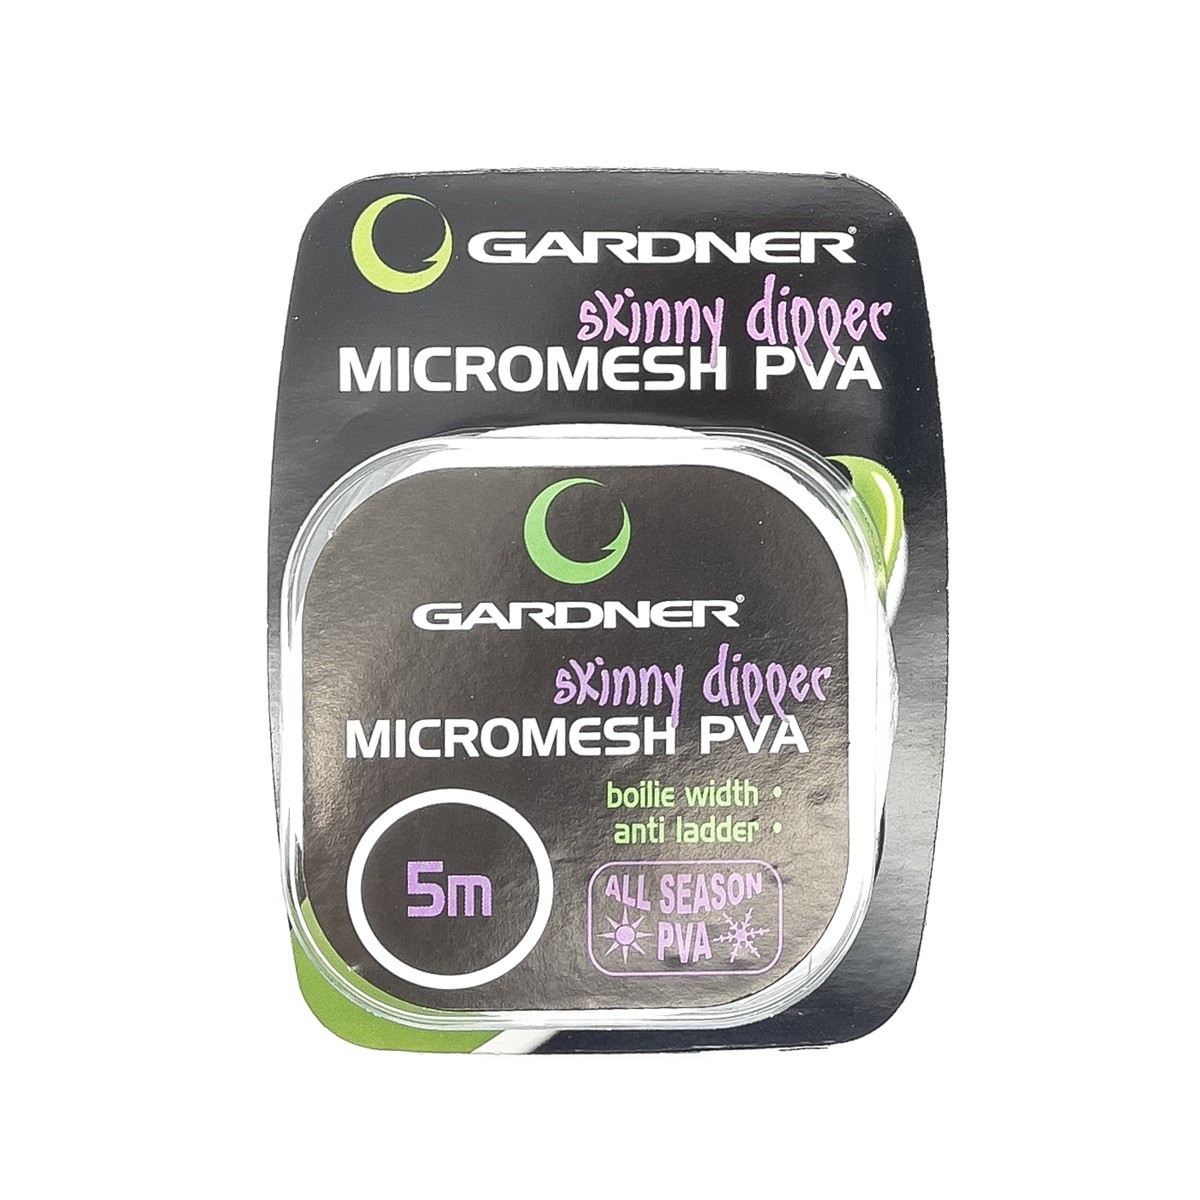 Сетка-чехол Gardner PVA skinny dip. Micromesh 23 мм 5м - фото 1